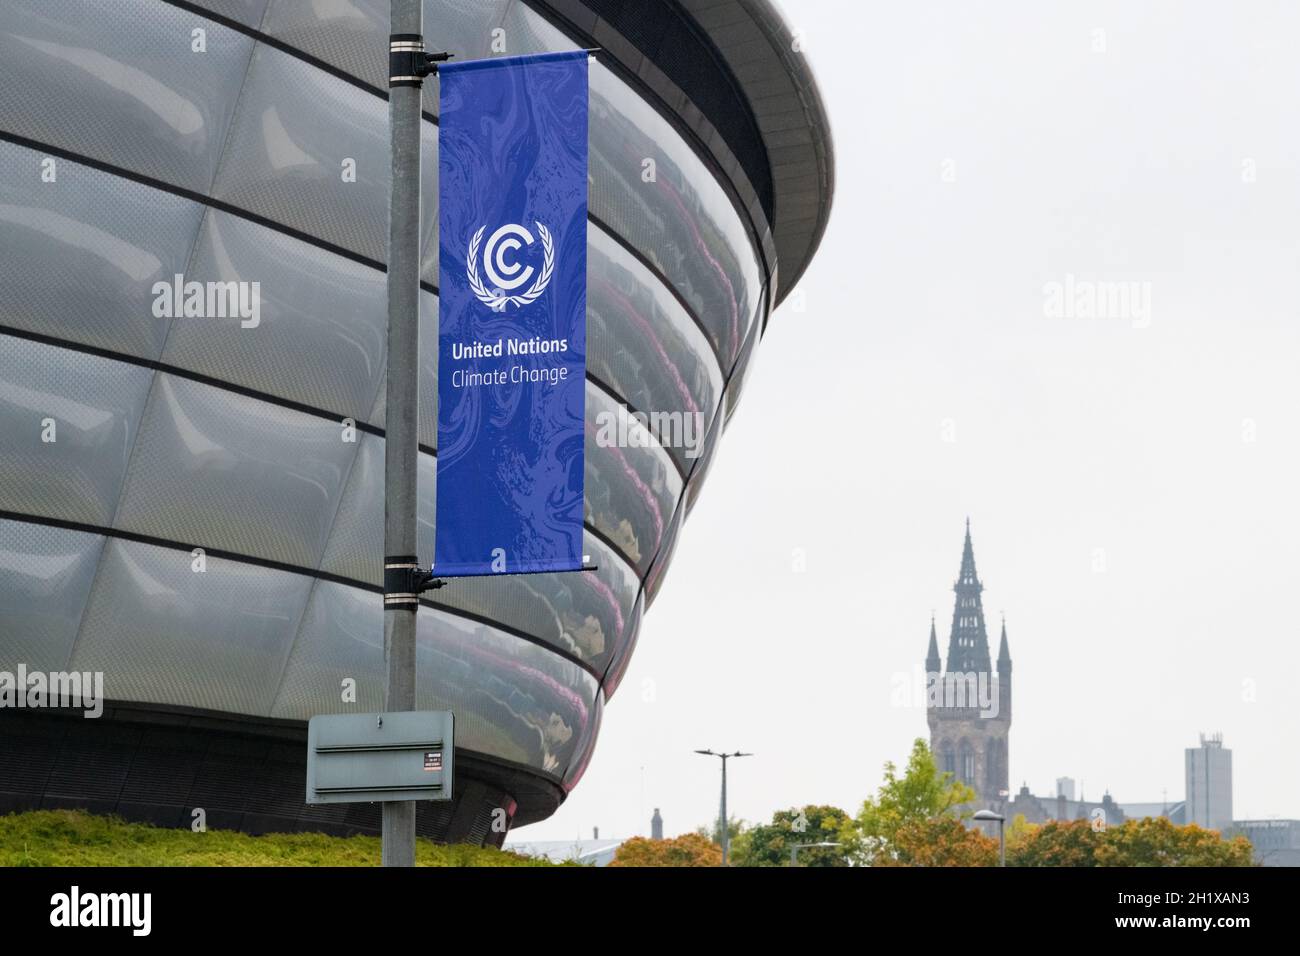 COP26 Glasgow 2021 - Bandiera delle Nazioni Unite sul cambiamento climatico di fronte ALL'OVO Hydro, una sede del Scottish Event Campus (SEC), Glasgow, Scozia, Regno Unito Foto Stock